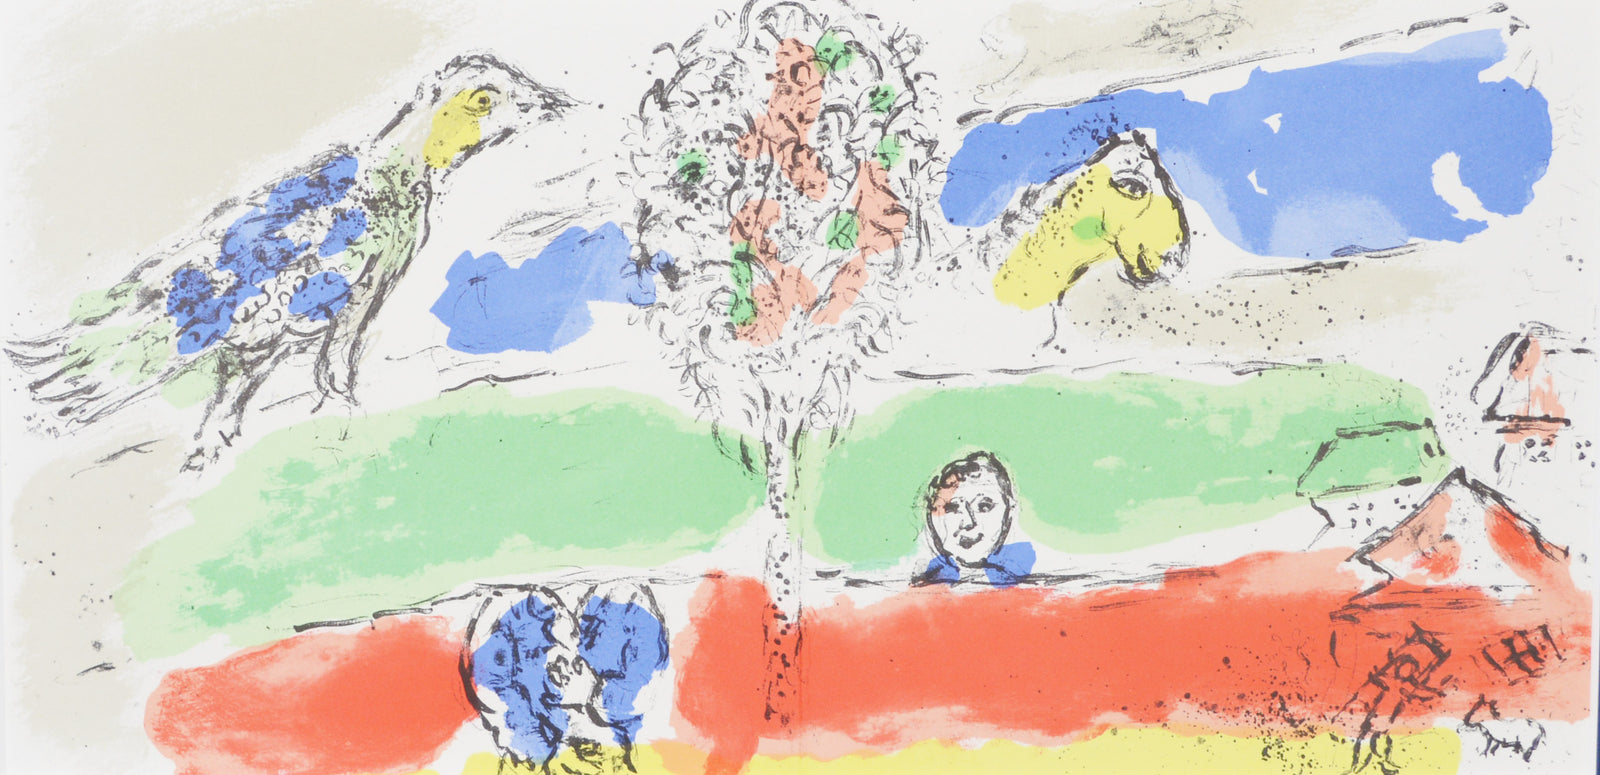 マルク シャガール 『 緑の大河 』 絵画 リトグラフ 1974年パリで制作 作家生前作品 – 版画専門店 OROCHI